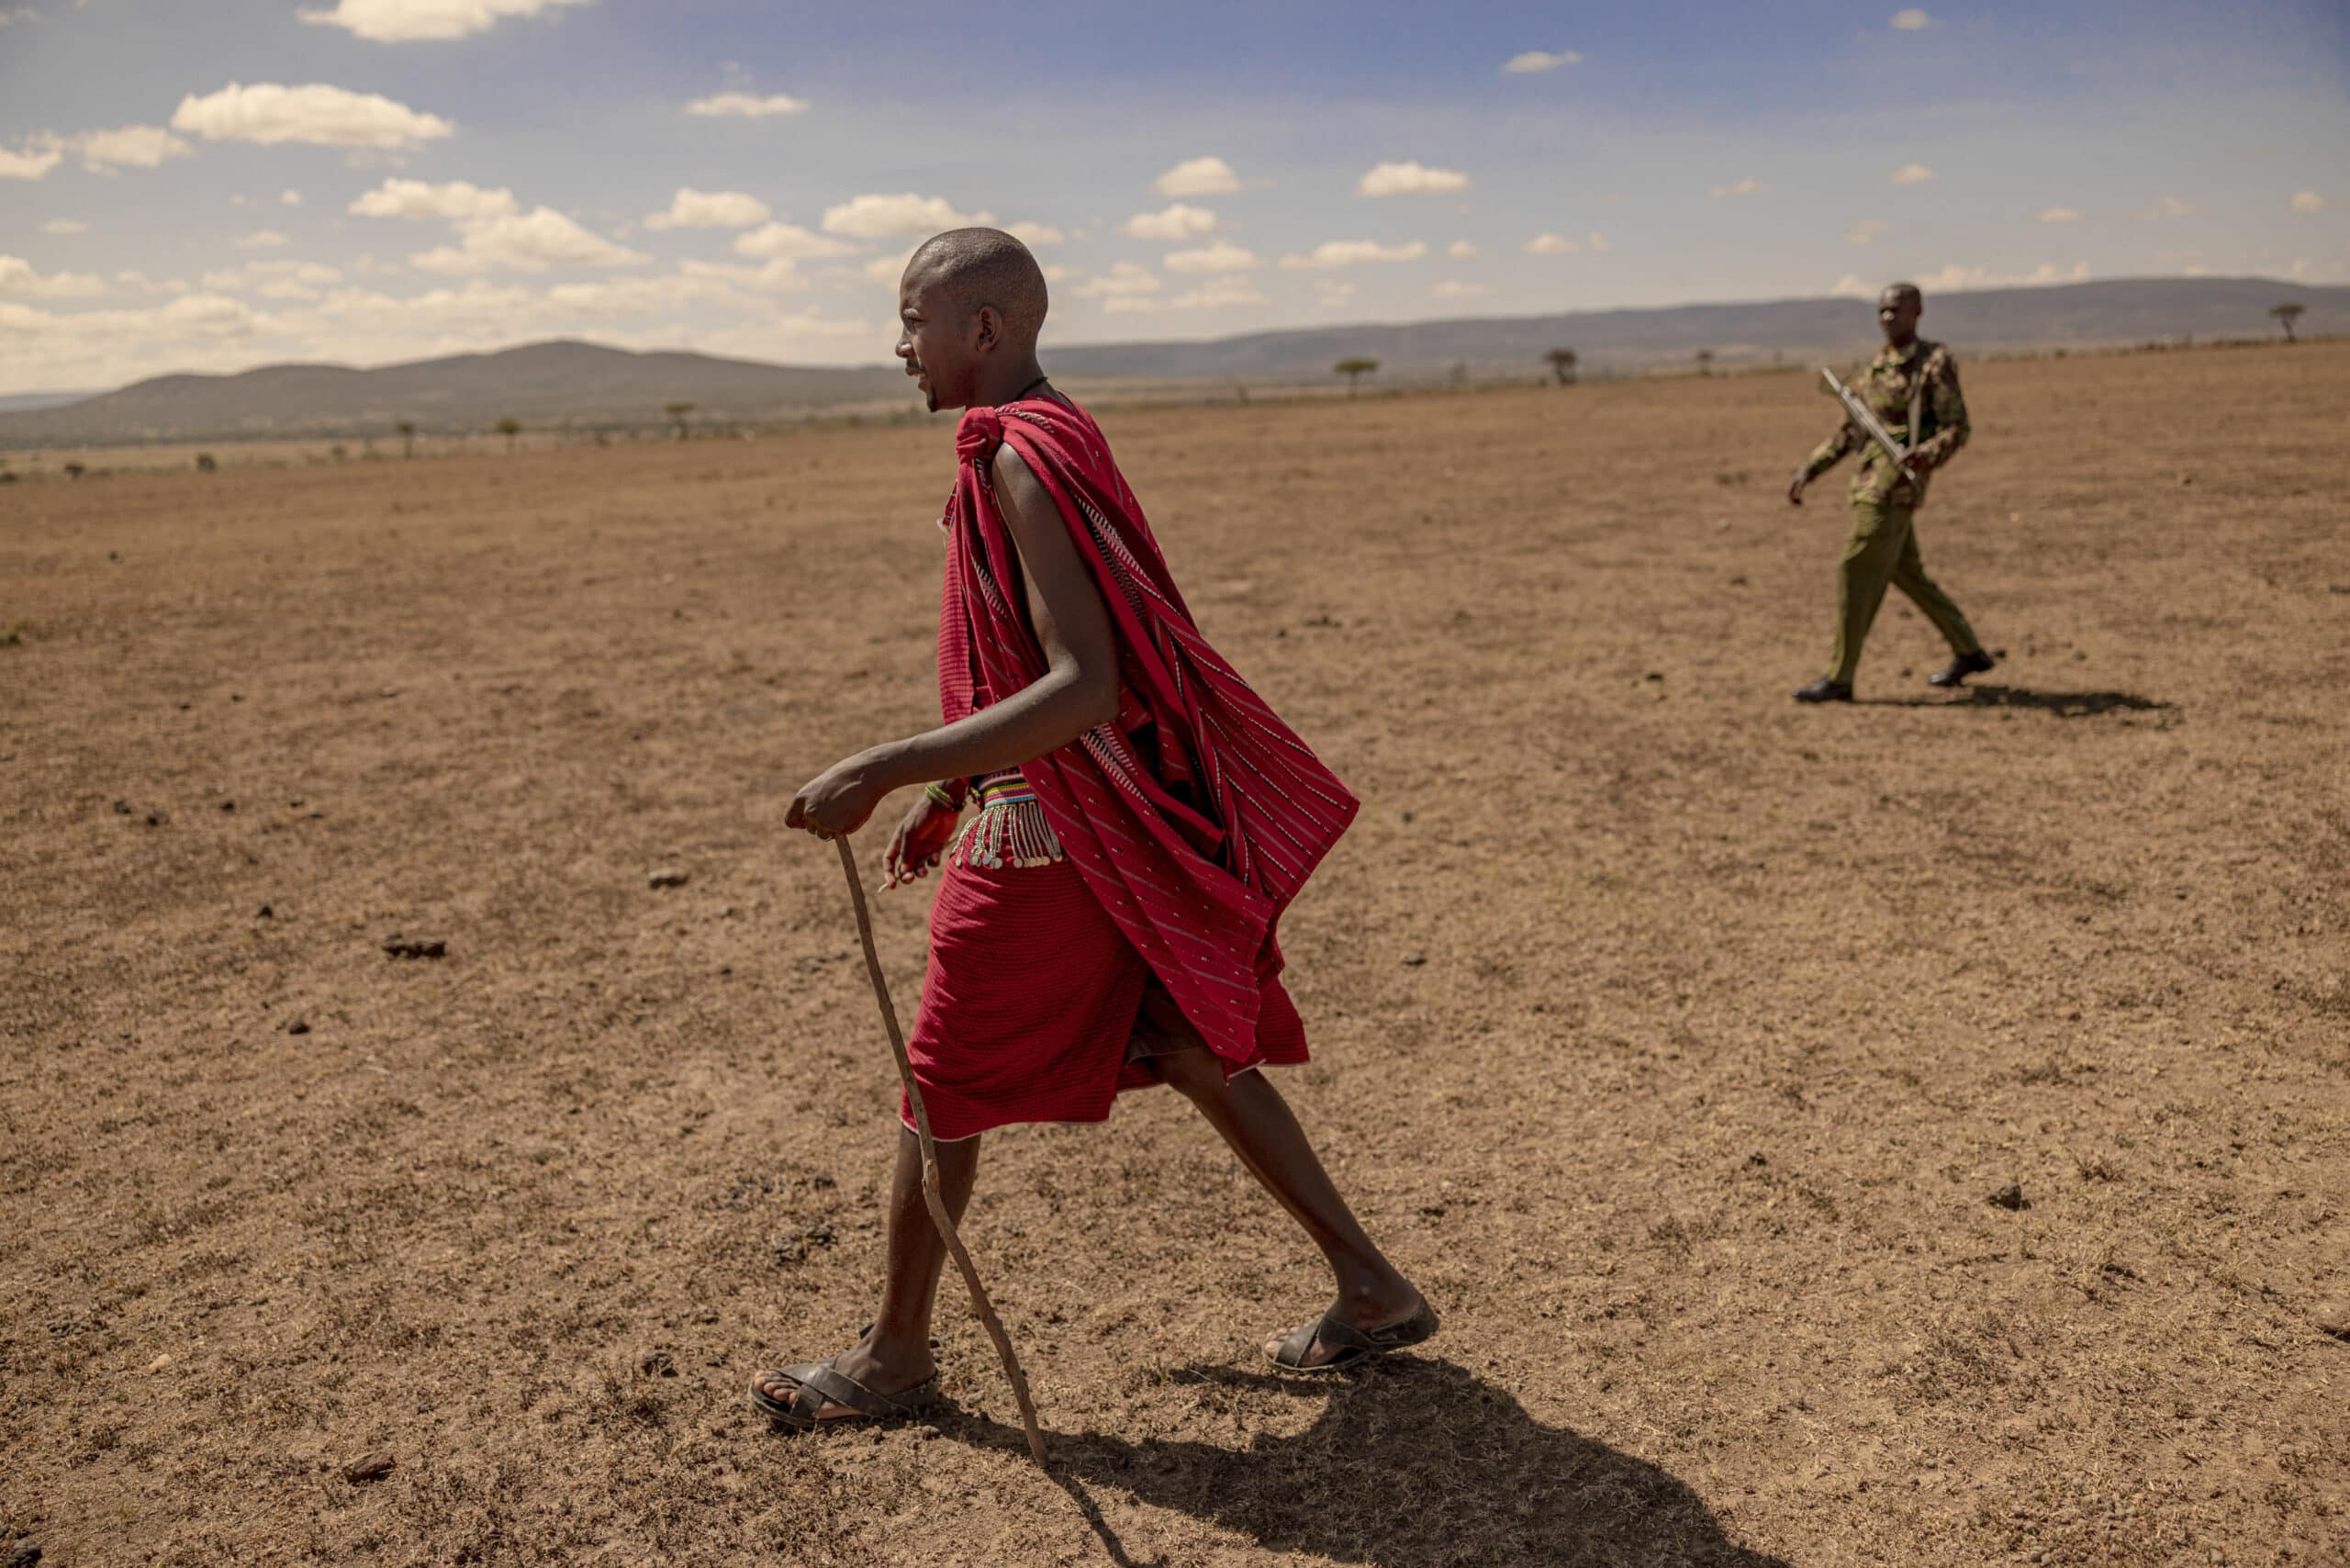 Ein Massai-Mann in traditioneller roter Kleidung geht durch ein trockenes Grasland. Im Hintergrund ist unter einem weiten, wolkigen Himmel ein weiterer Mann zu sehen. © Fotografie Tomas Rodriguez